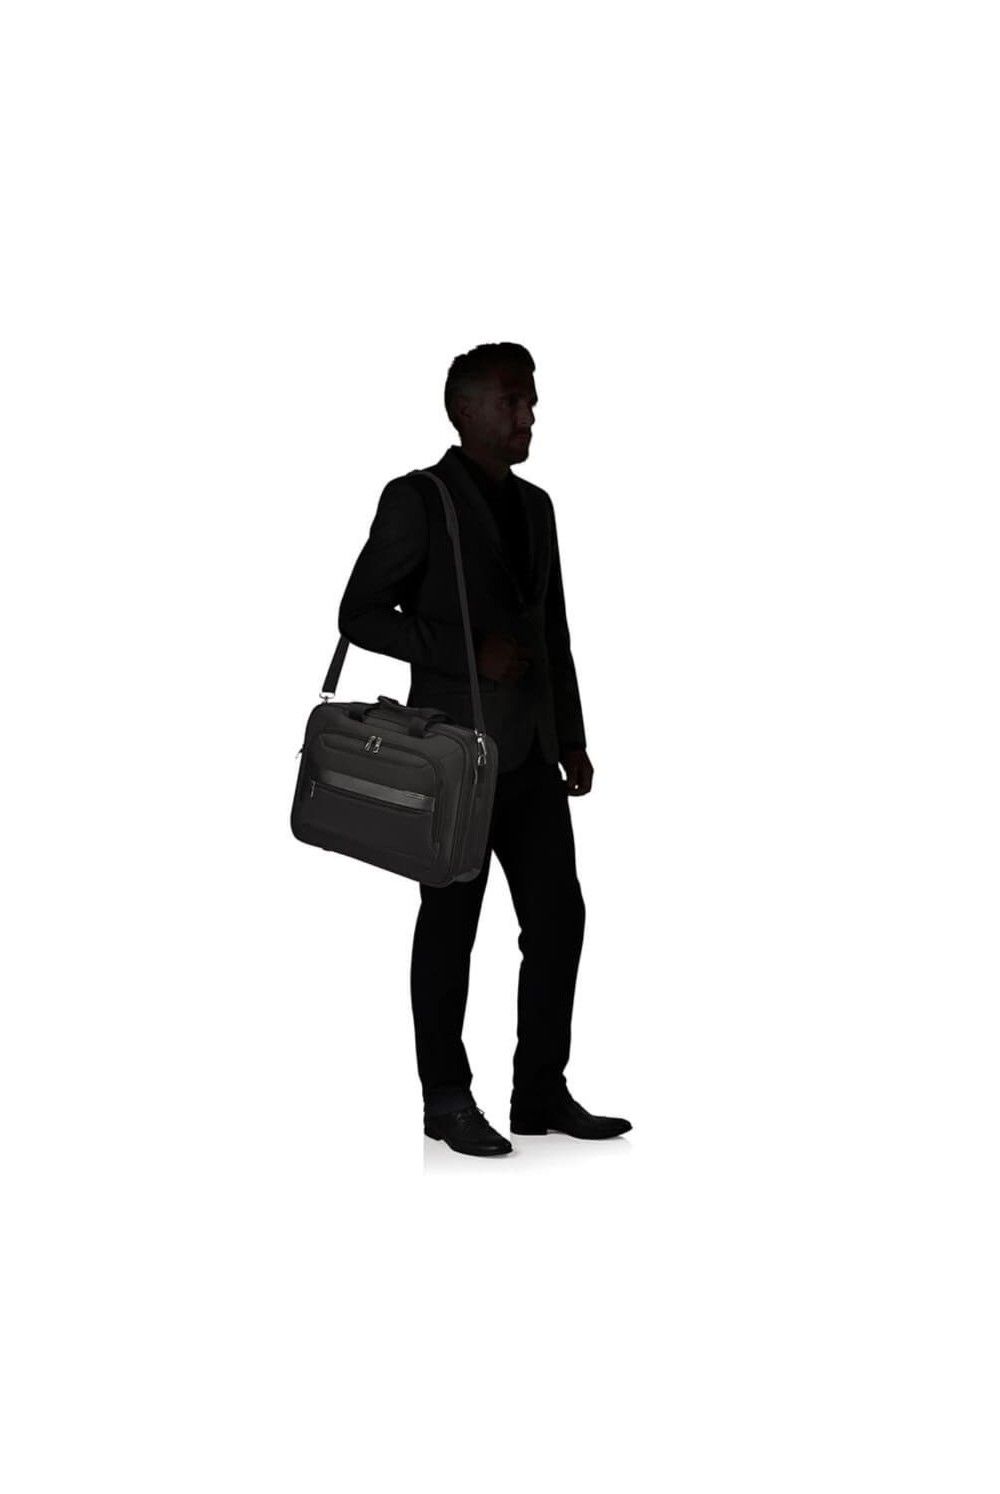 Samsonite Vectura Evo briefcase 15.6 inches 18L